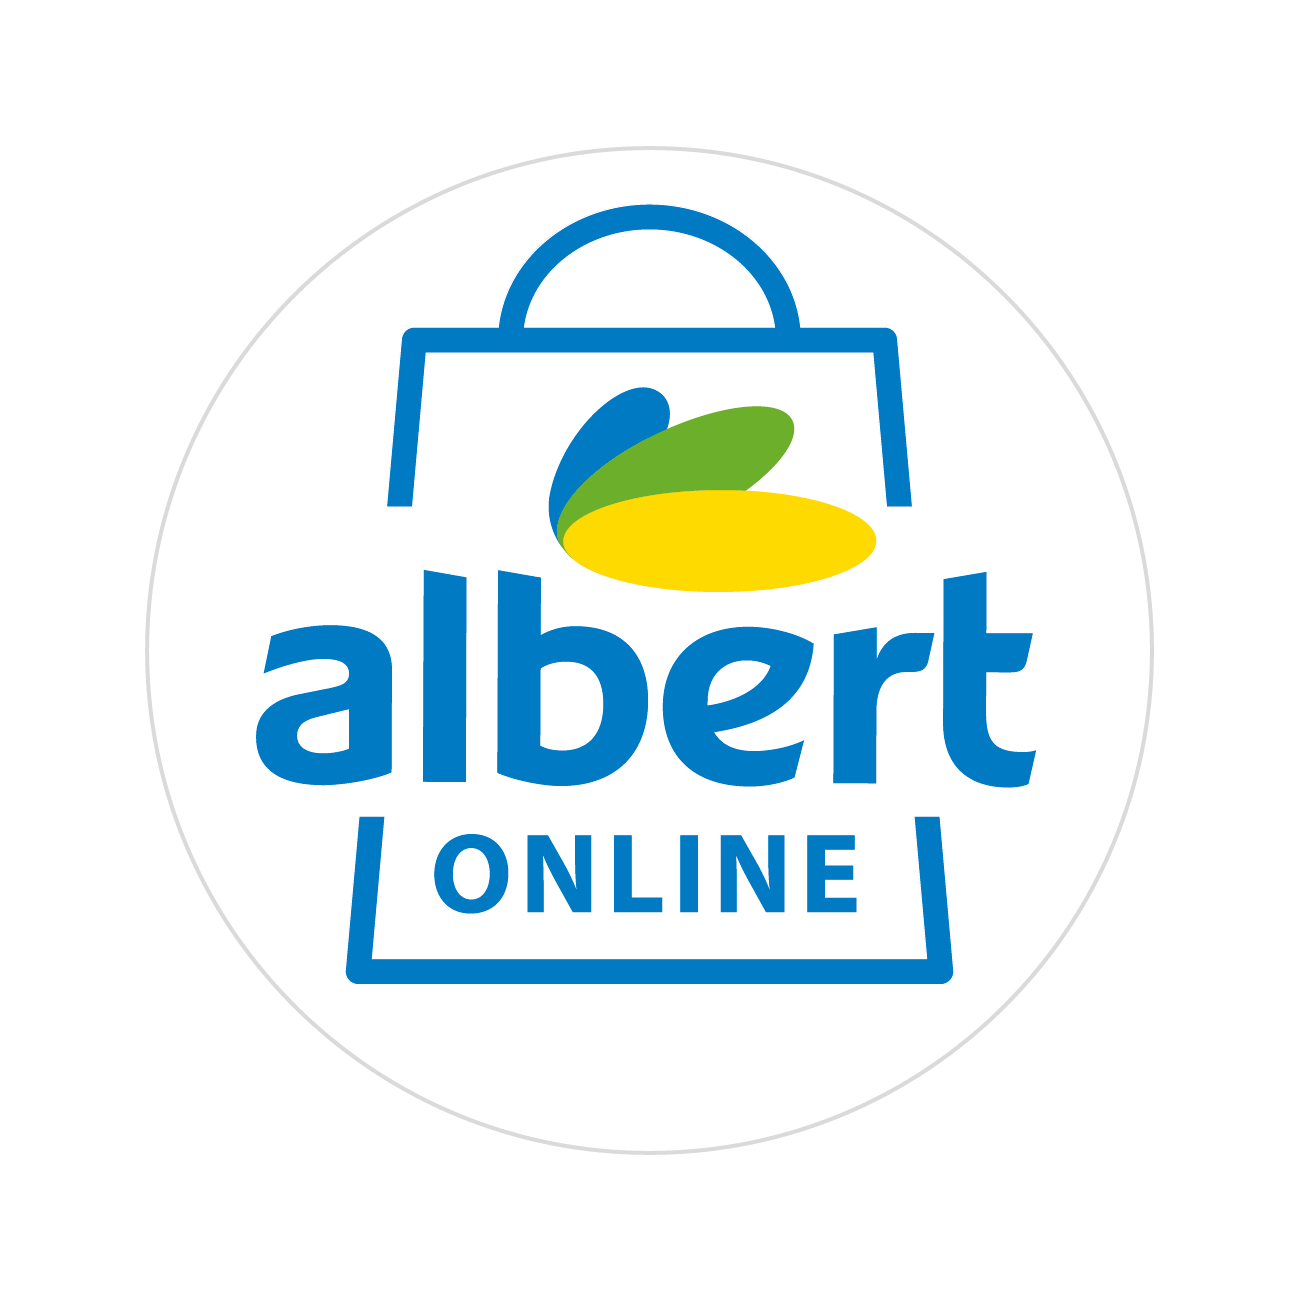 Albert Online